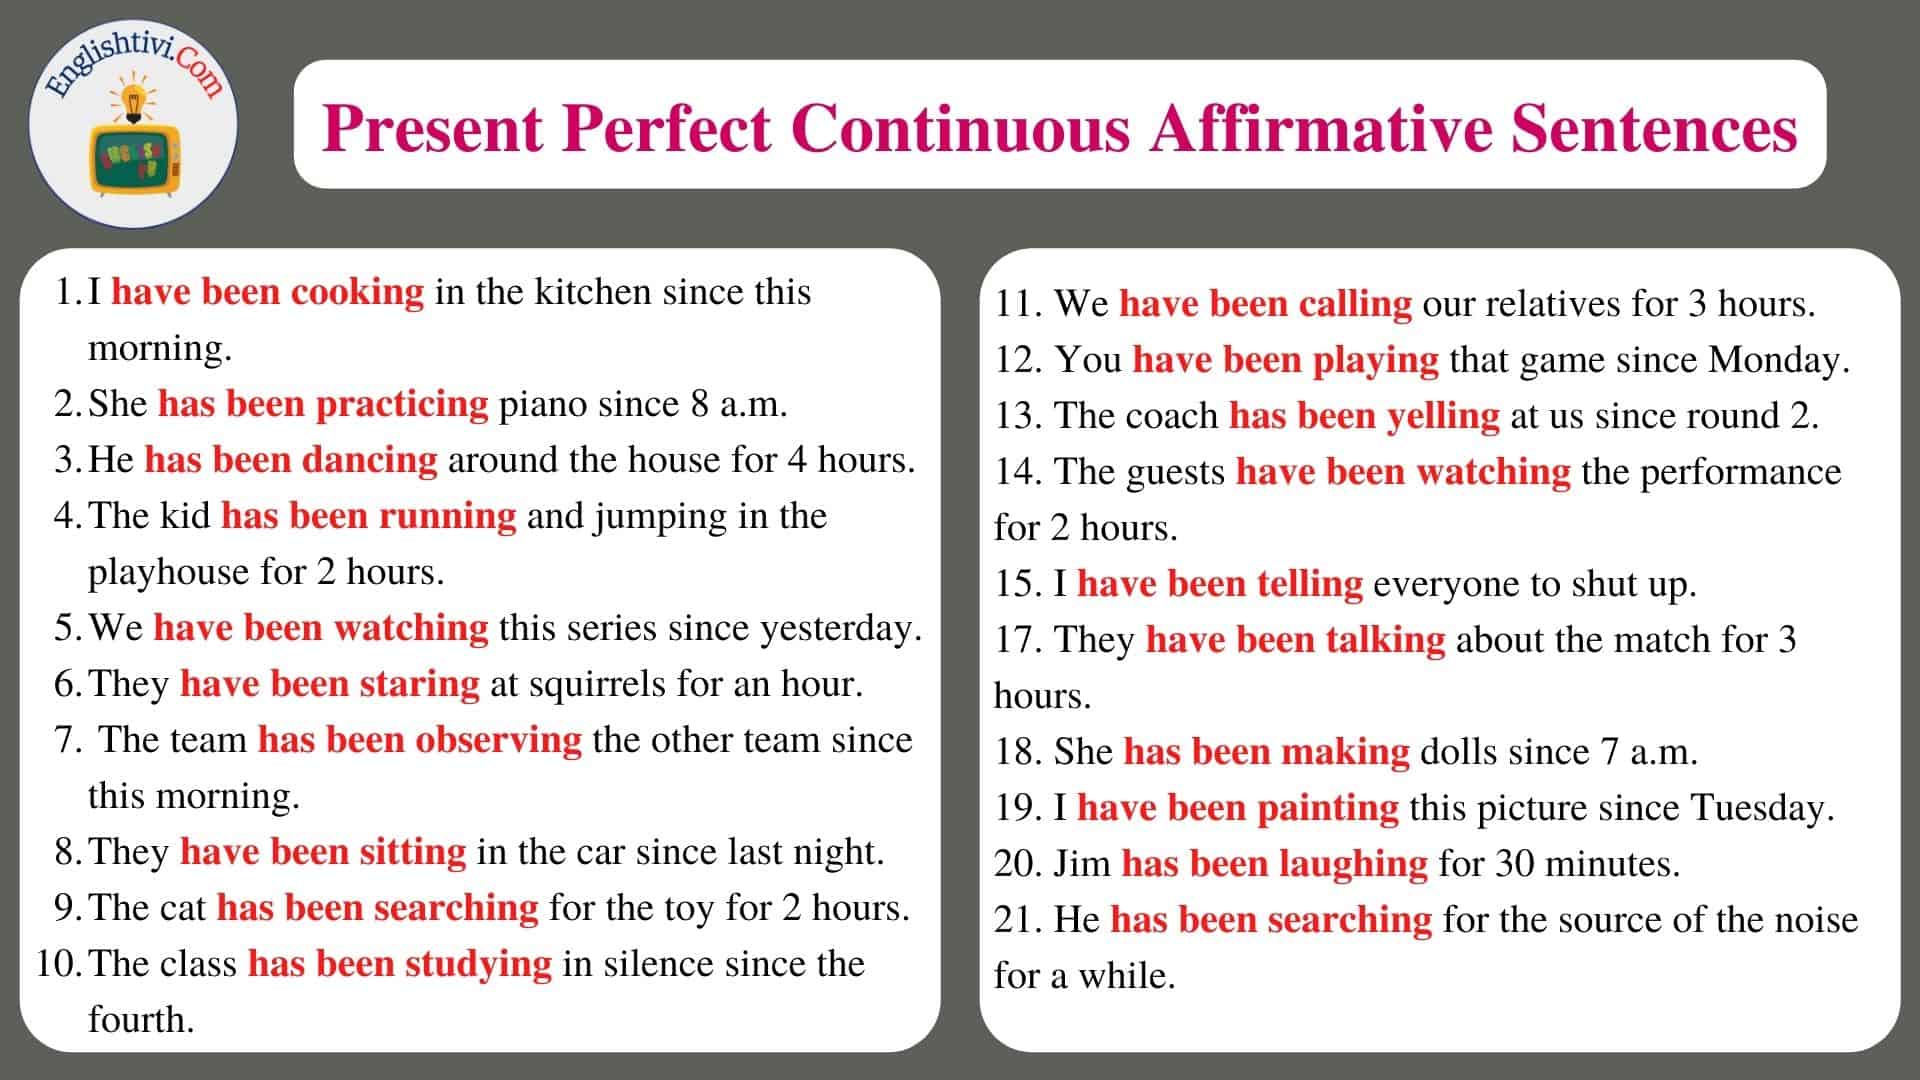 Present_Perfect_Continuous_Affirmative_Sentences